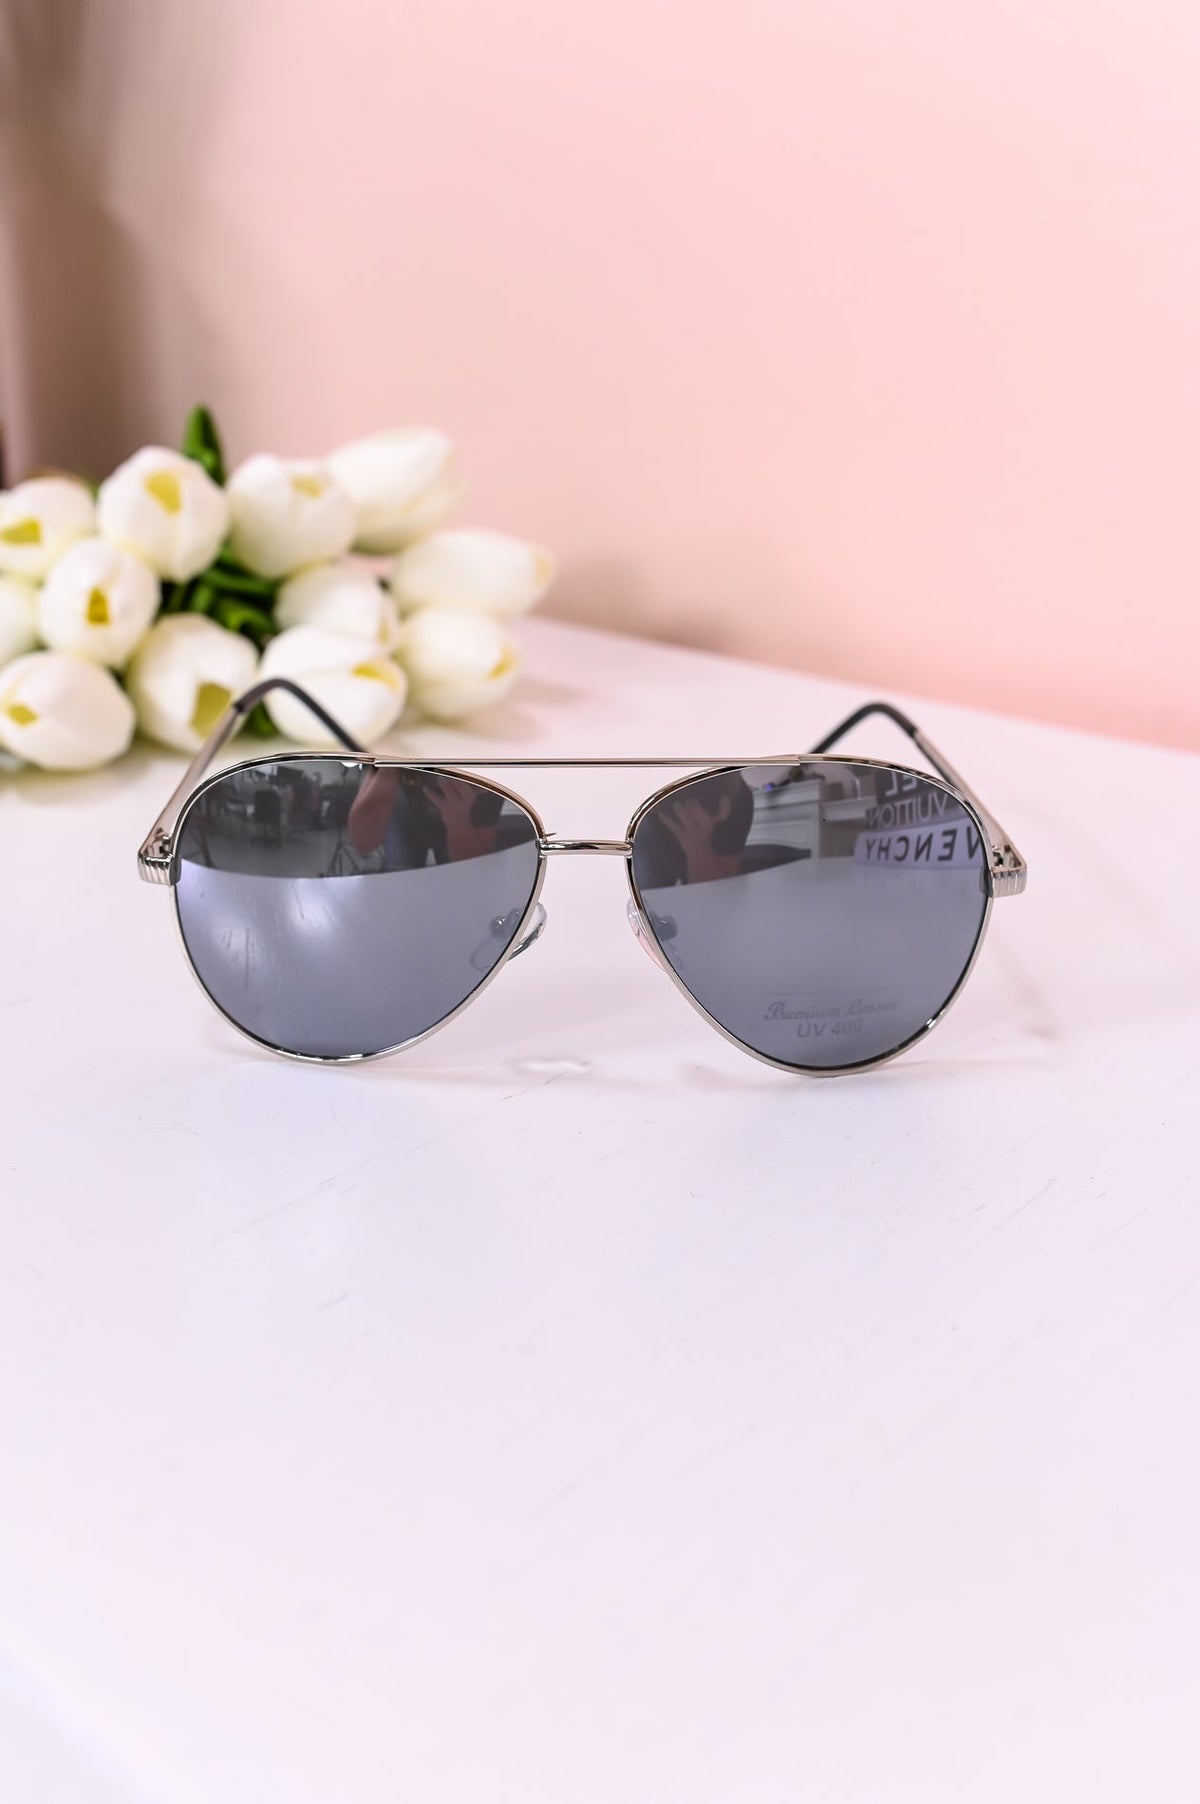 Silver/Black Aviator Sunglasses - SGL348SI